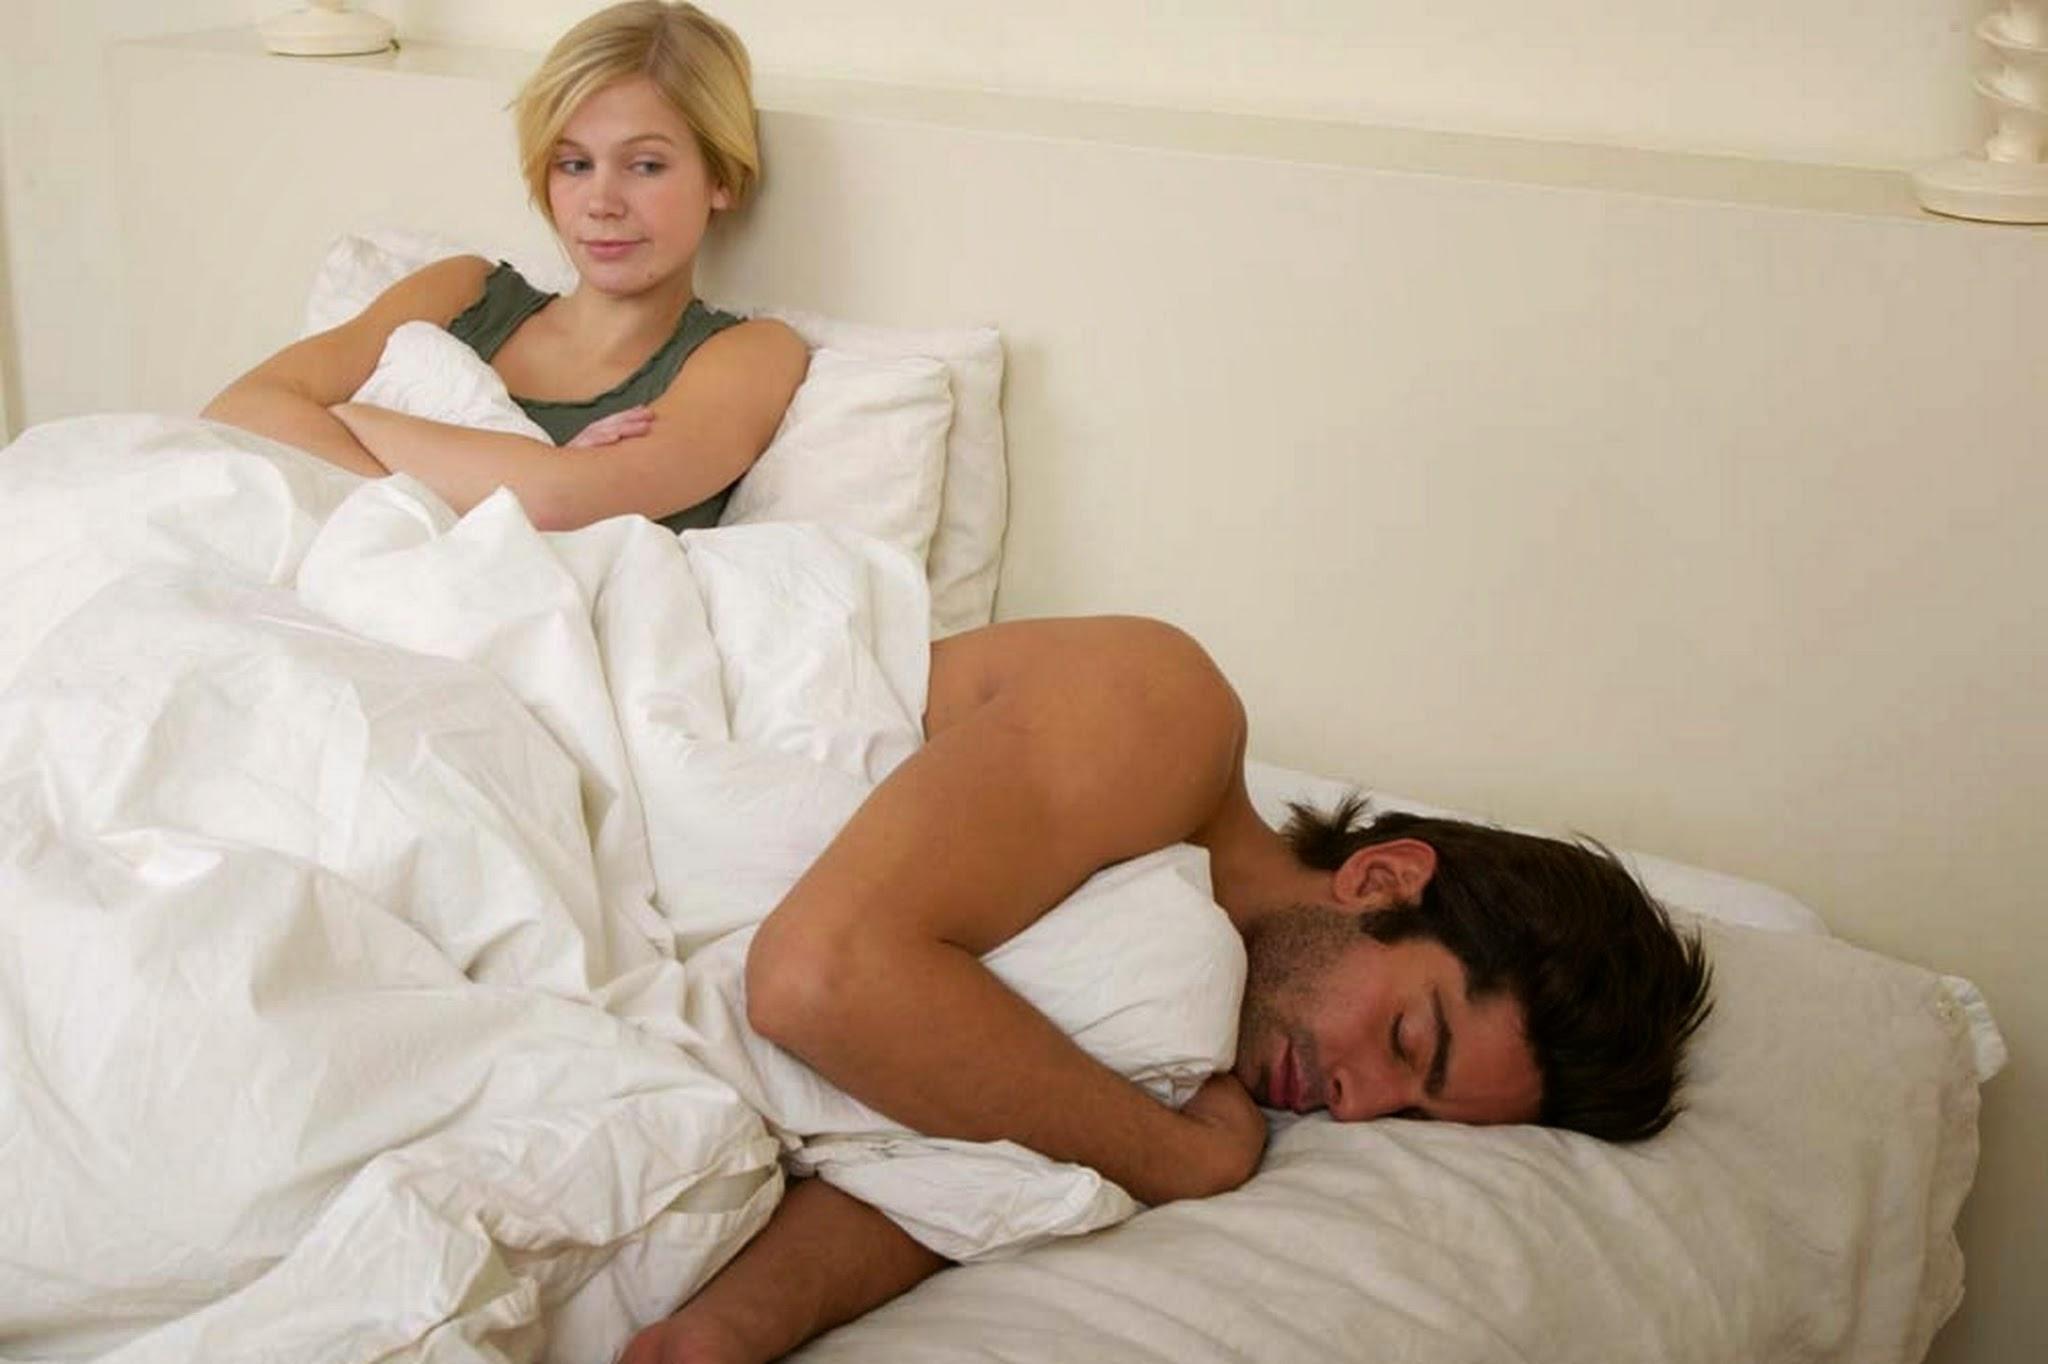 Притворилась спящей видео. Мужчина в постели с женой. Женщина отказывает мужчине в постели. Женщина хочет переспать.